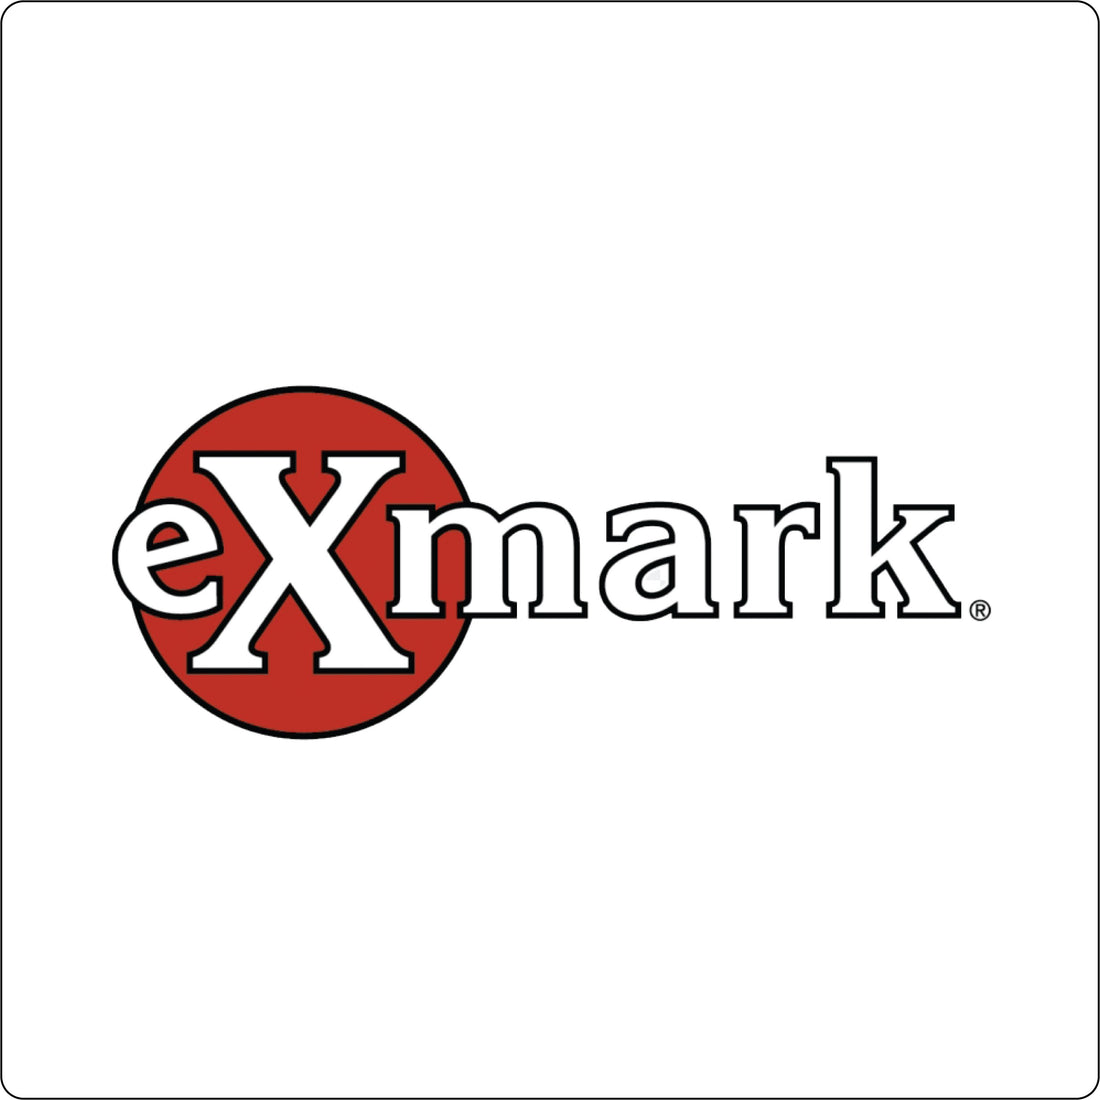  Exmark®